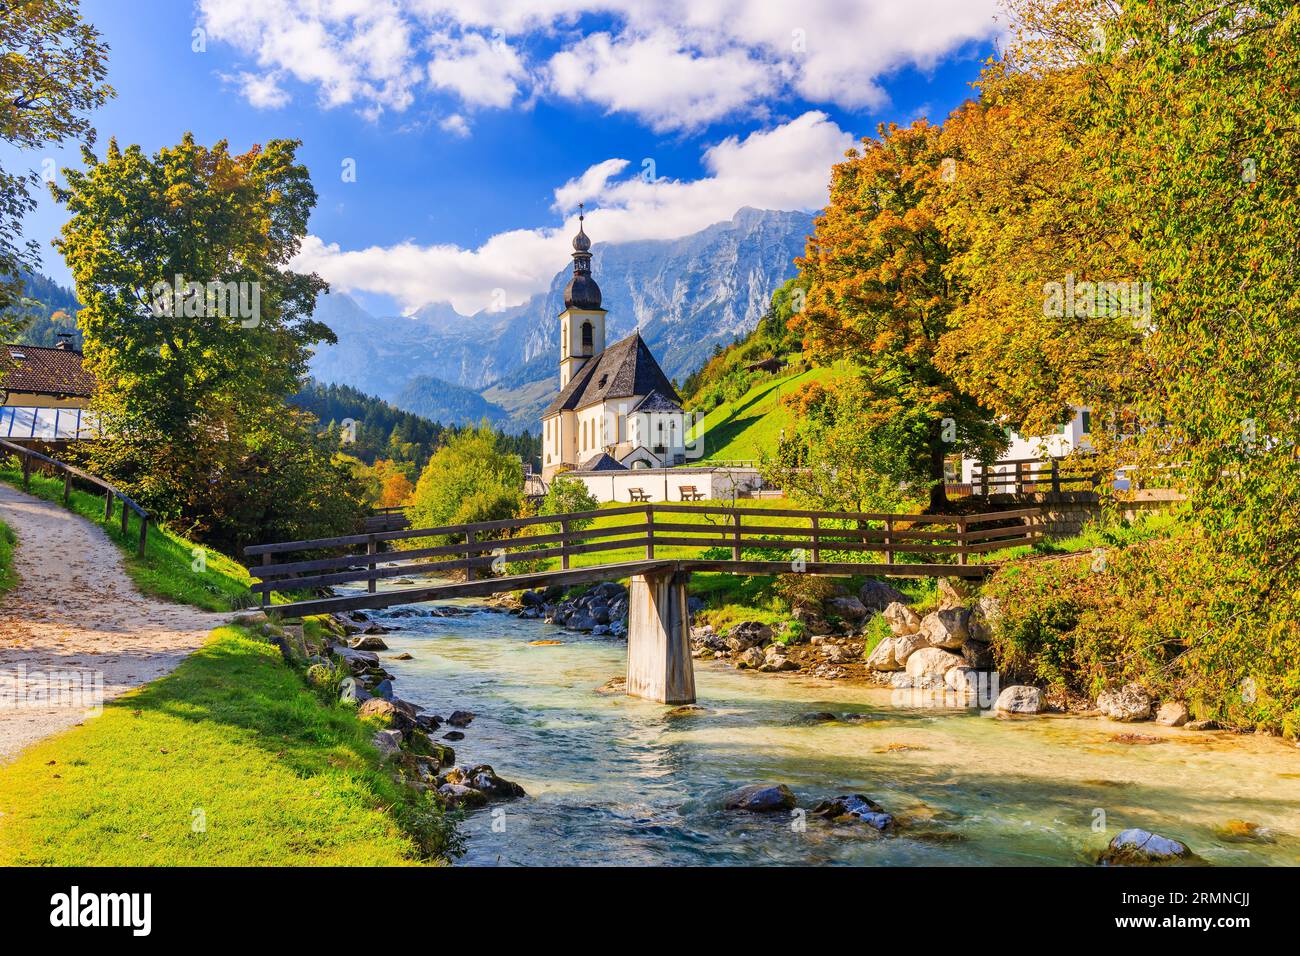 Parc national de Berchtesgaden, Allemagne. Église paroissiale de Saint-Sébastien dans le village de Ramsau Banque D'Images